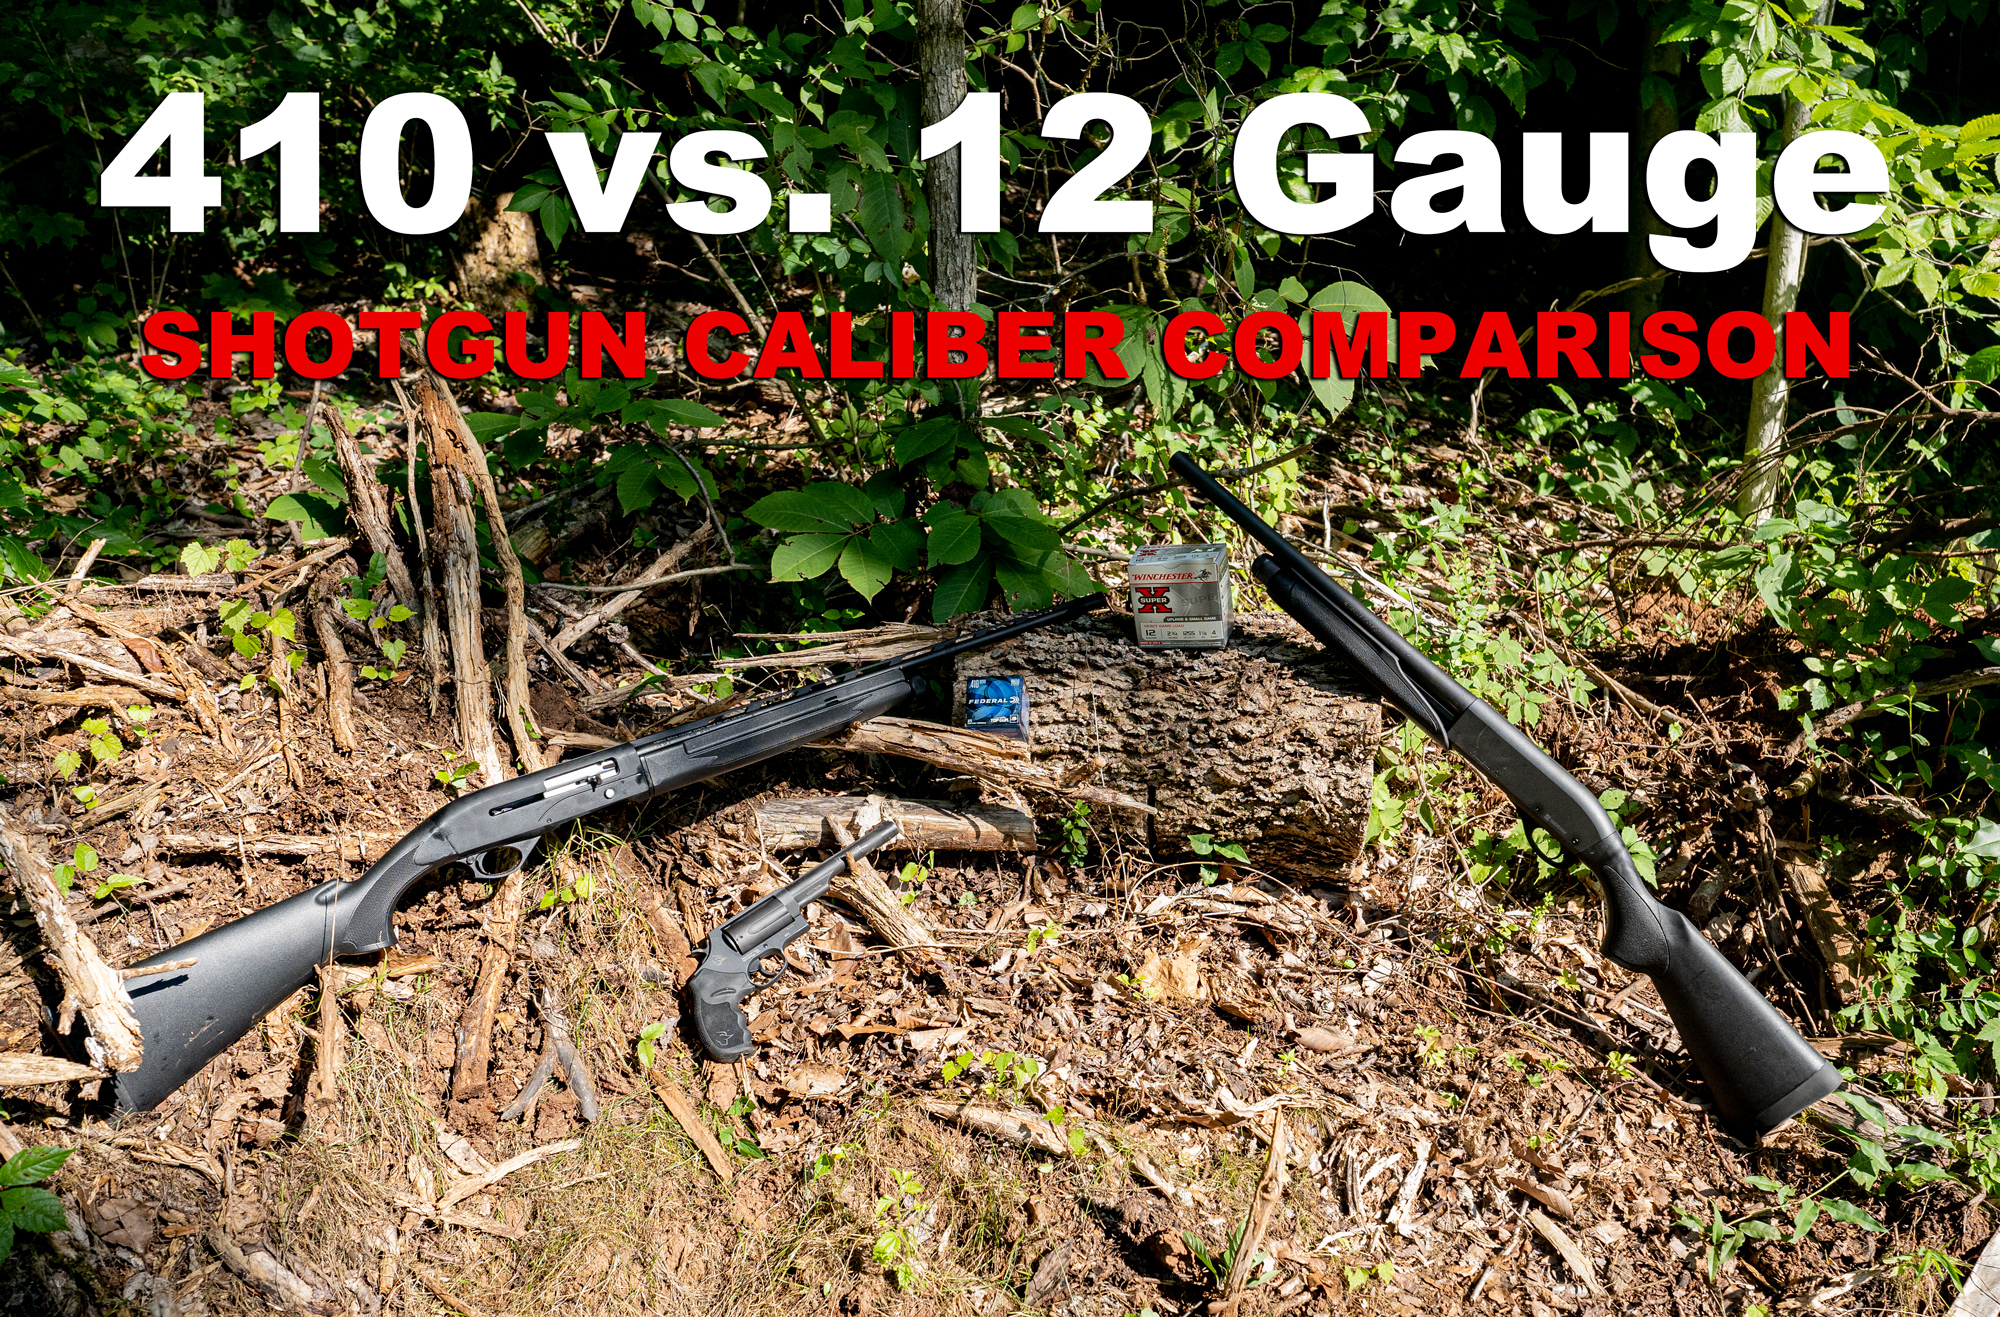 410 vs 12 gauge shotguns at the shooting range